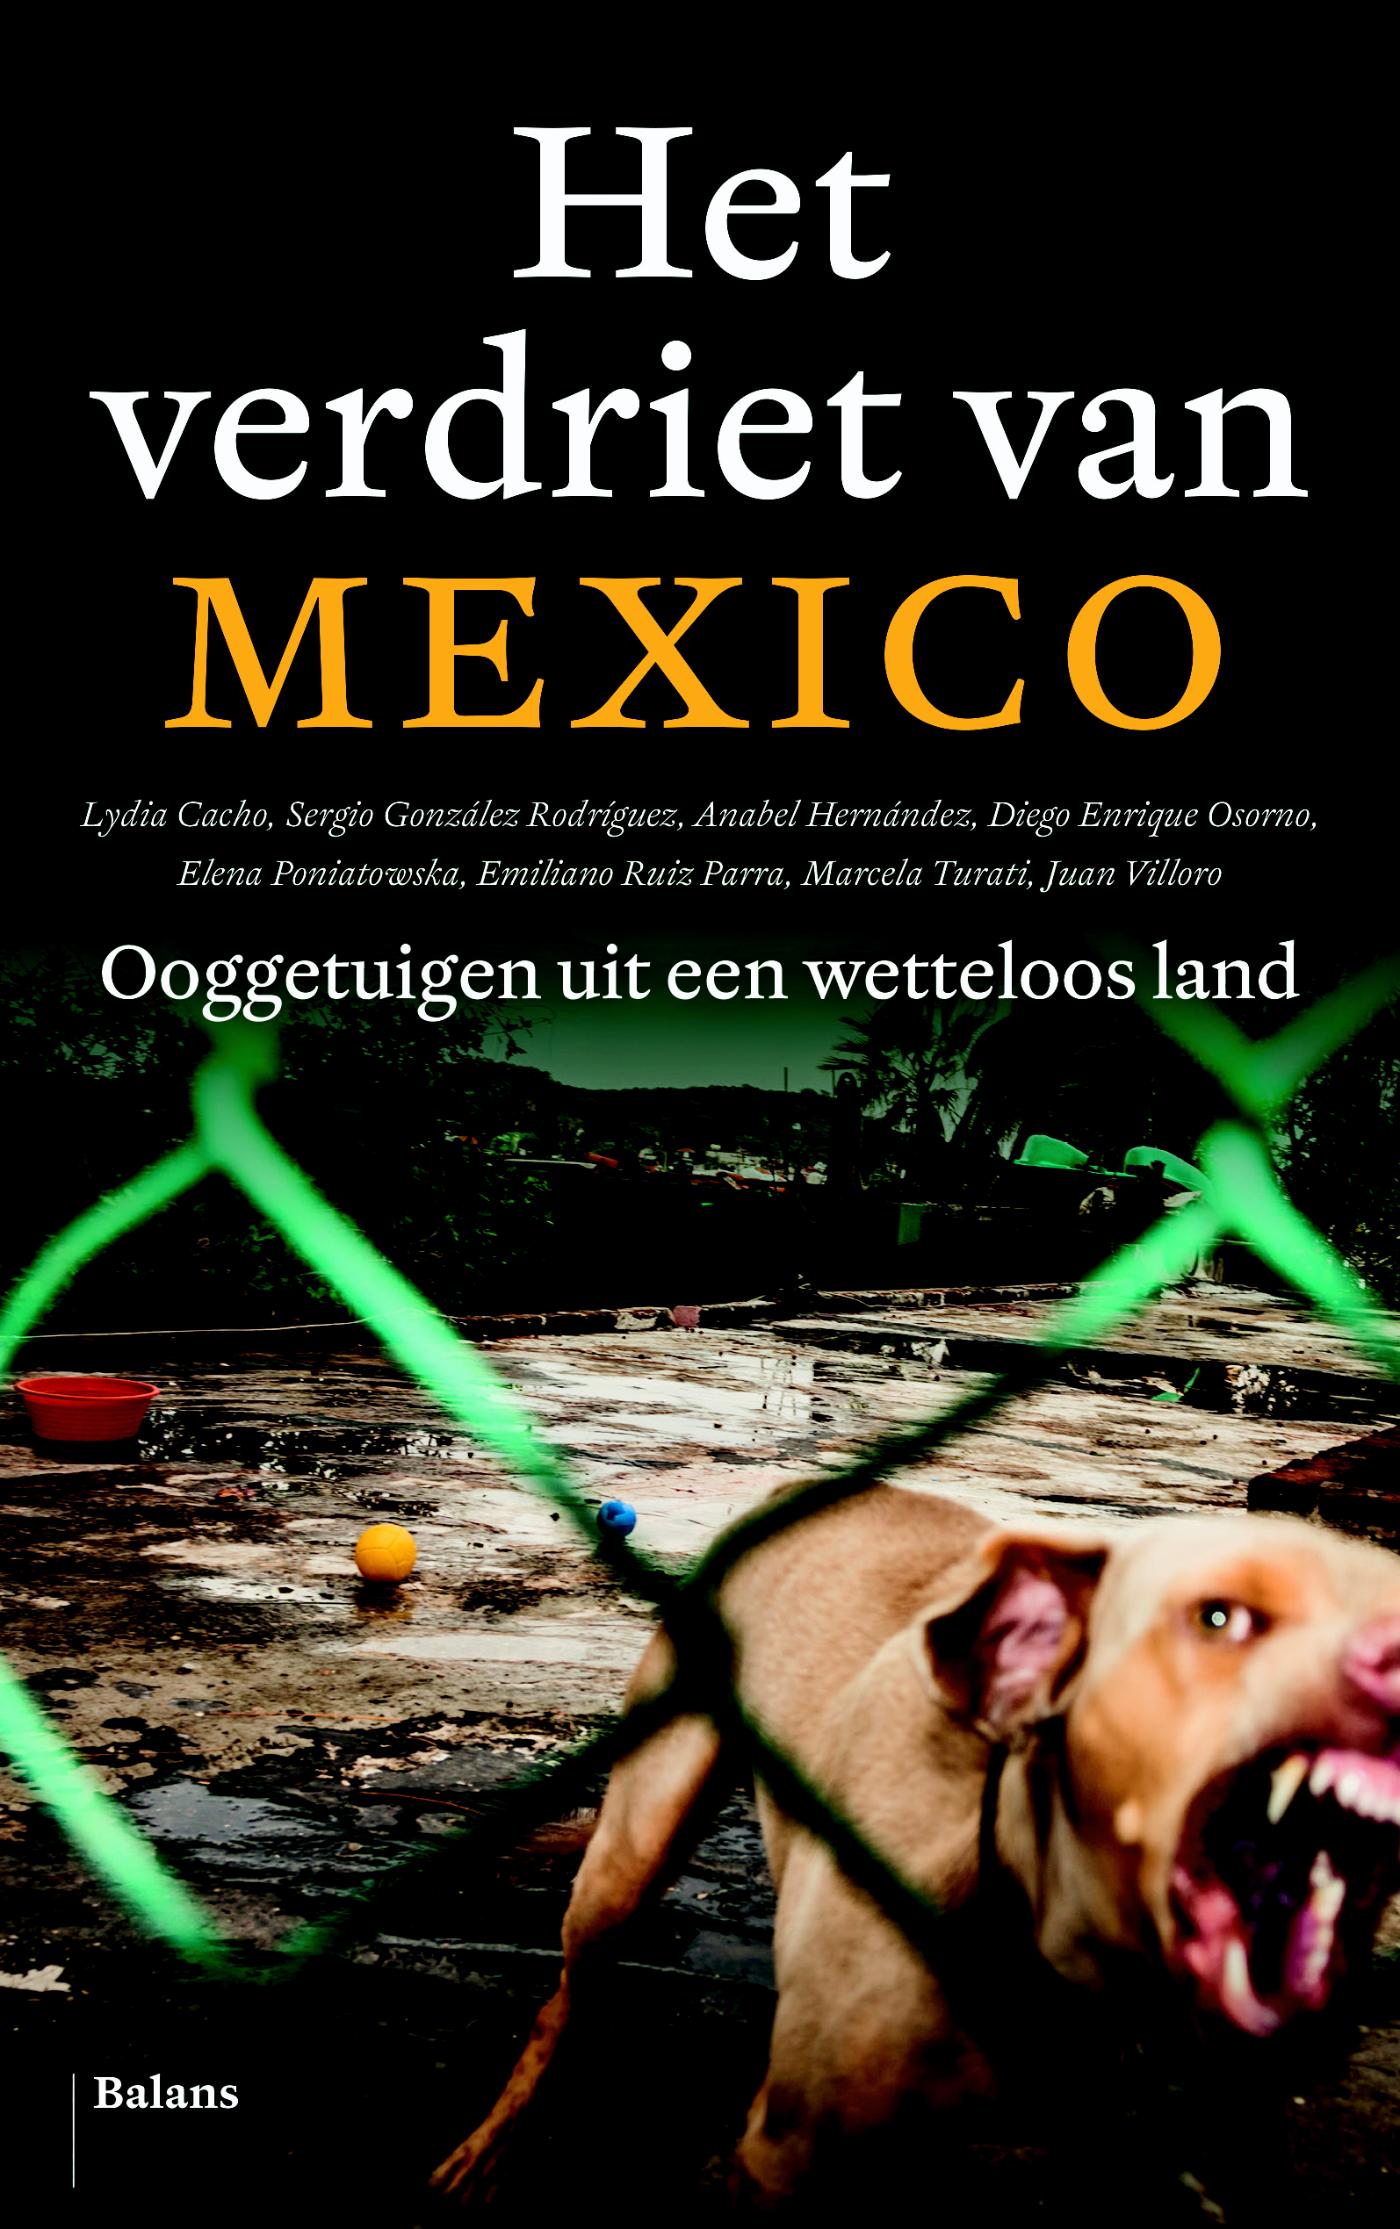 Het verdriet van Mexico (Ebook)